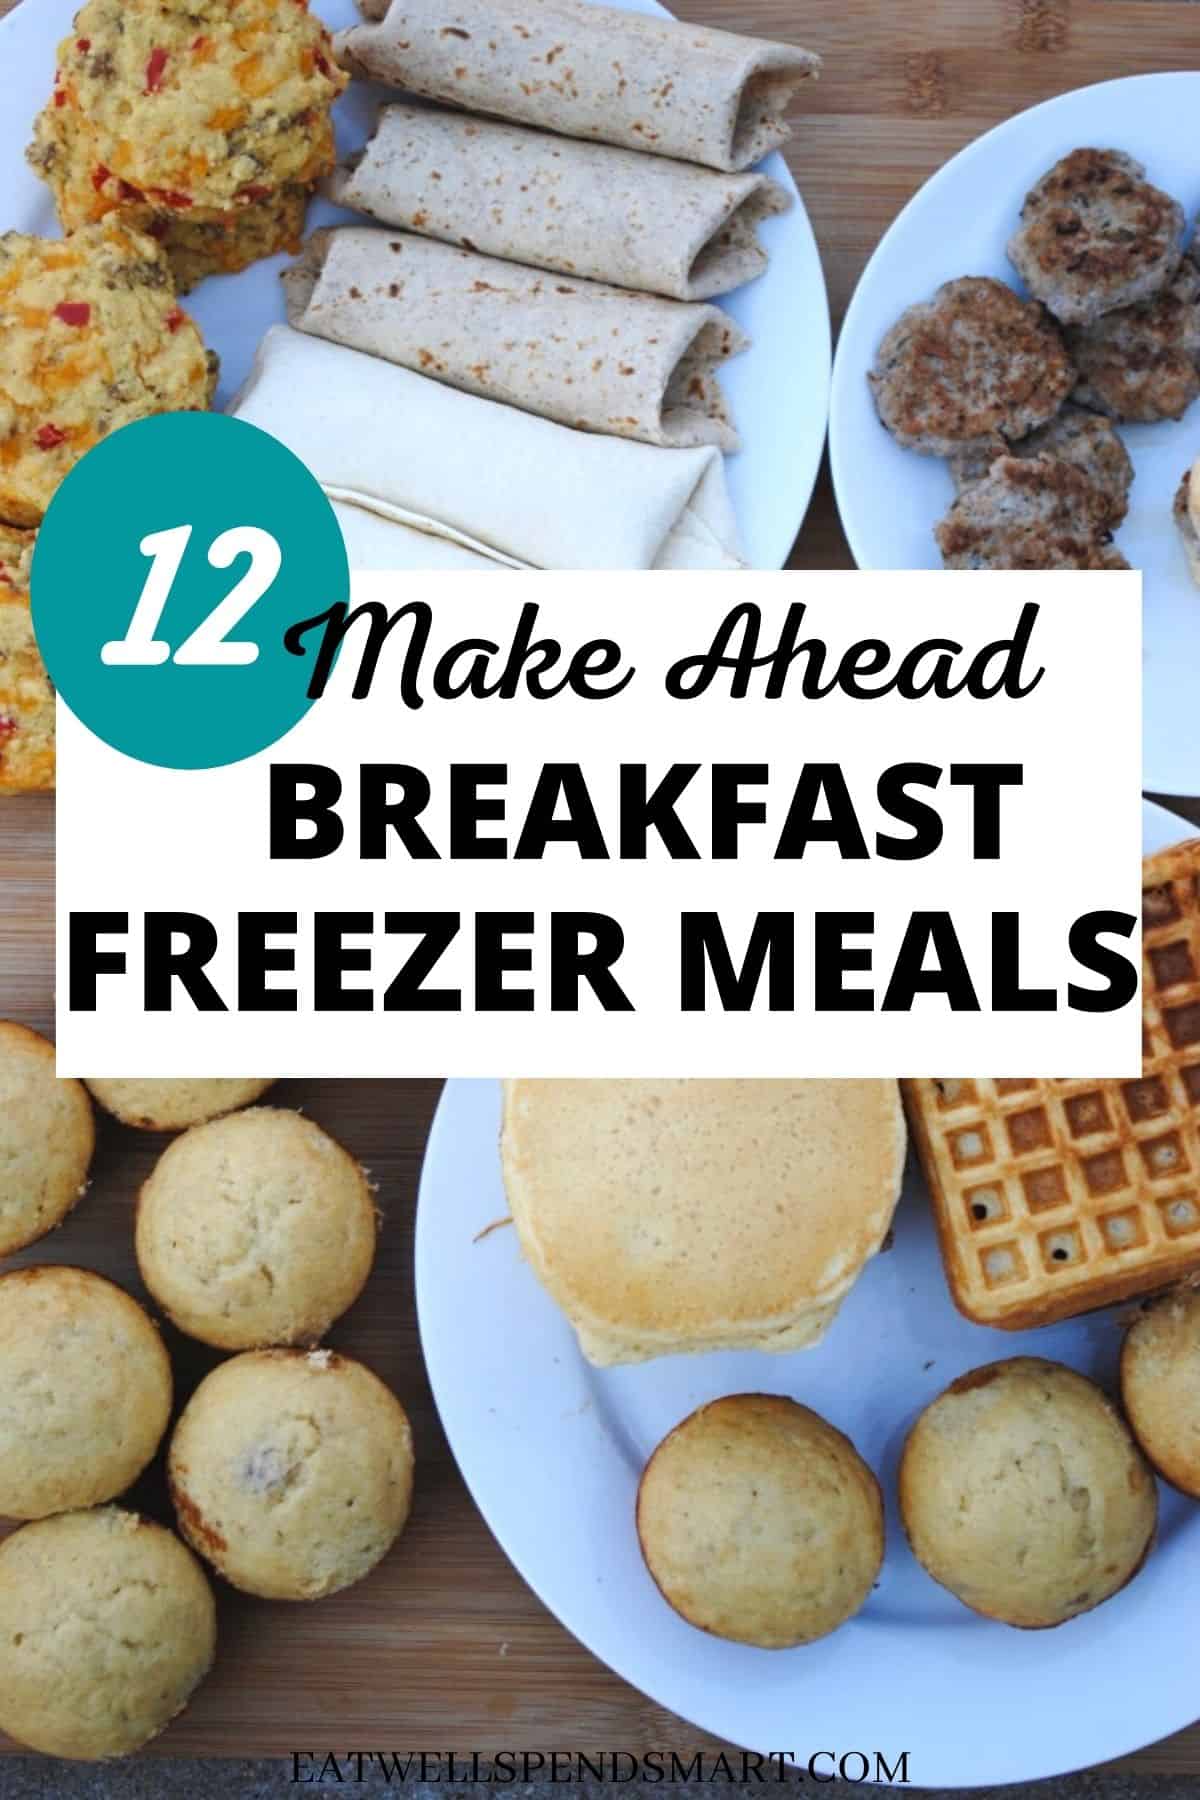 Easy-Breezy Breakfast Bundle Recipe